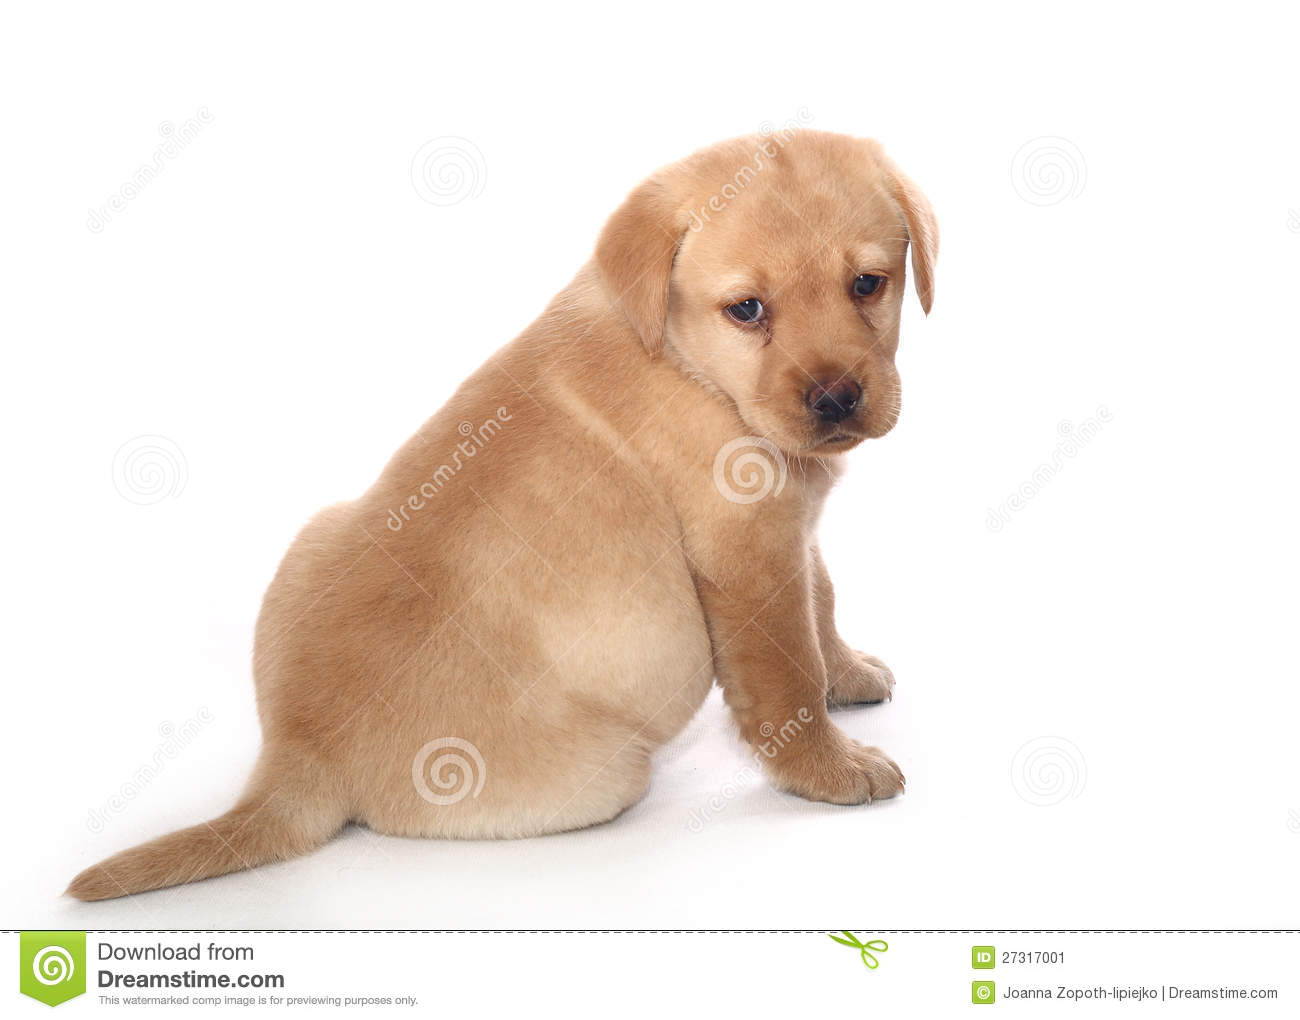 Sad Labrador Retriever Puppy Stock Image   Image  27317001